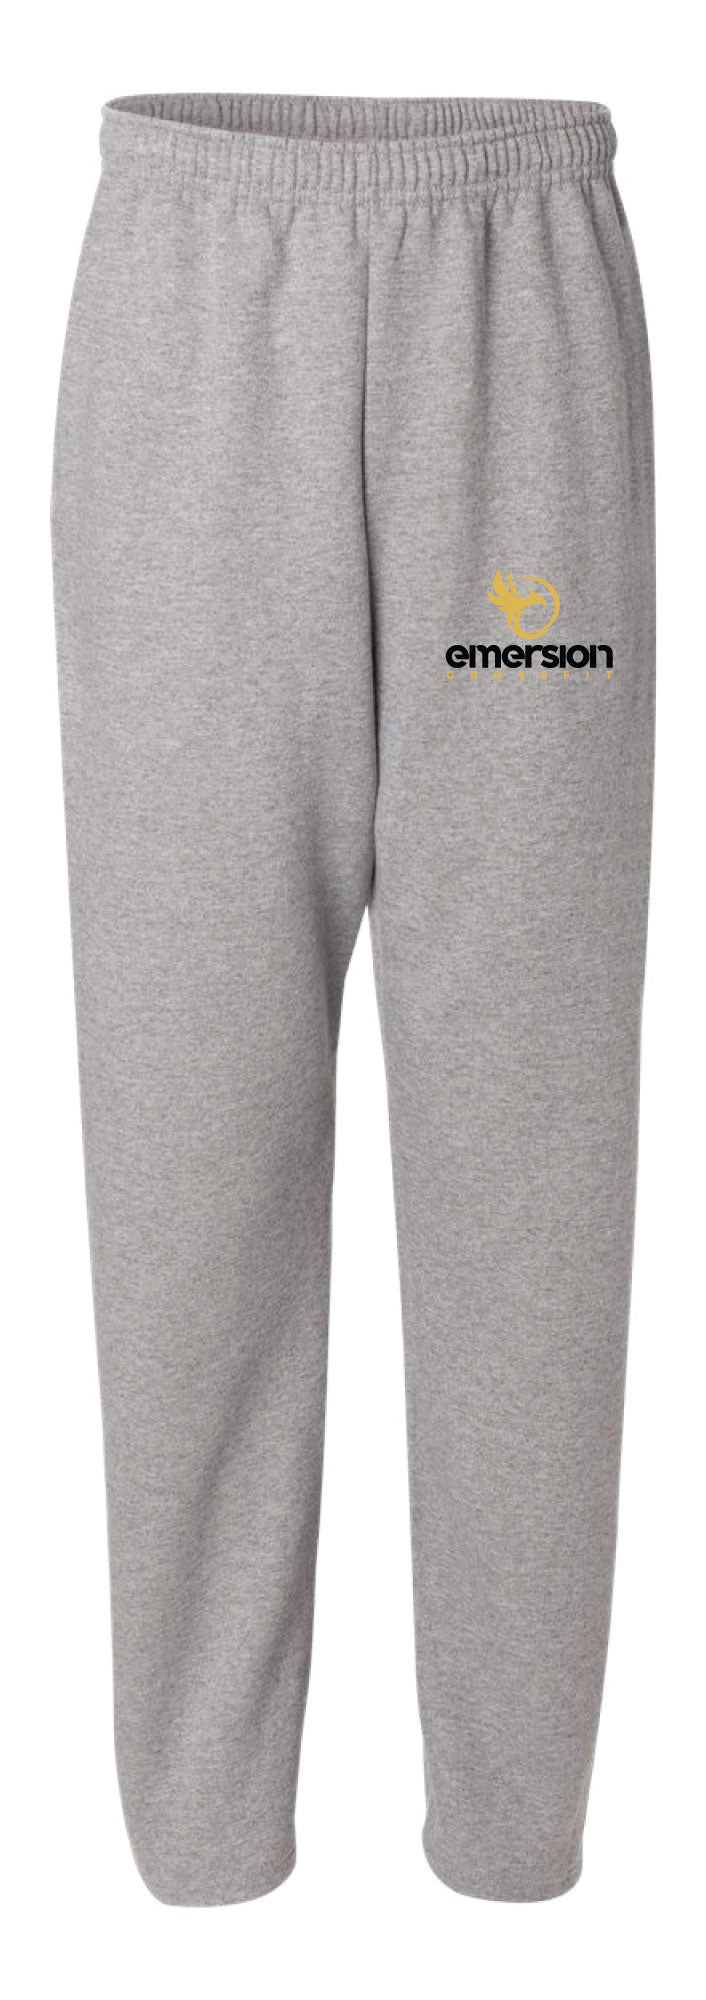 Emersion Crossfit Cotton Sweatpants - Gray - 5KounT2018